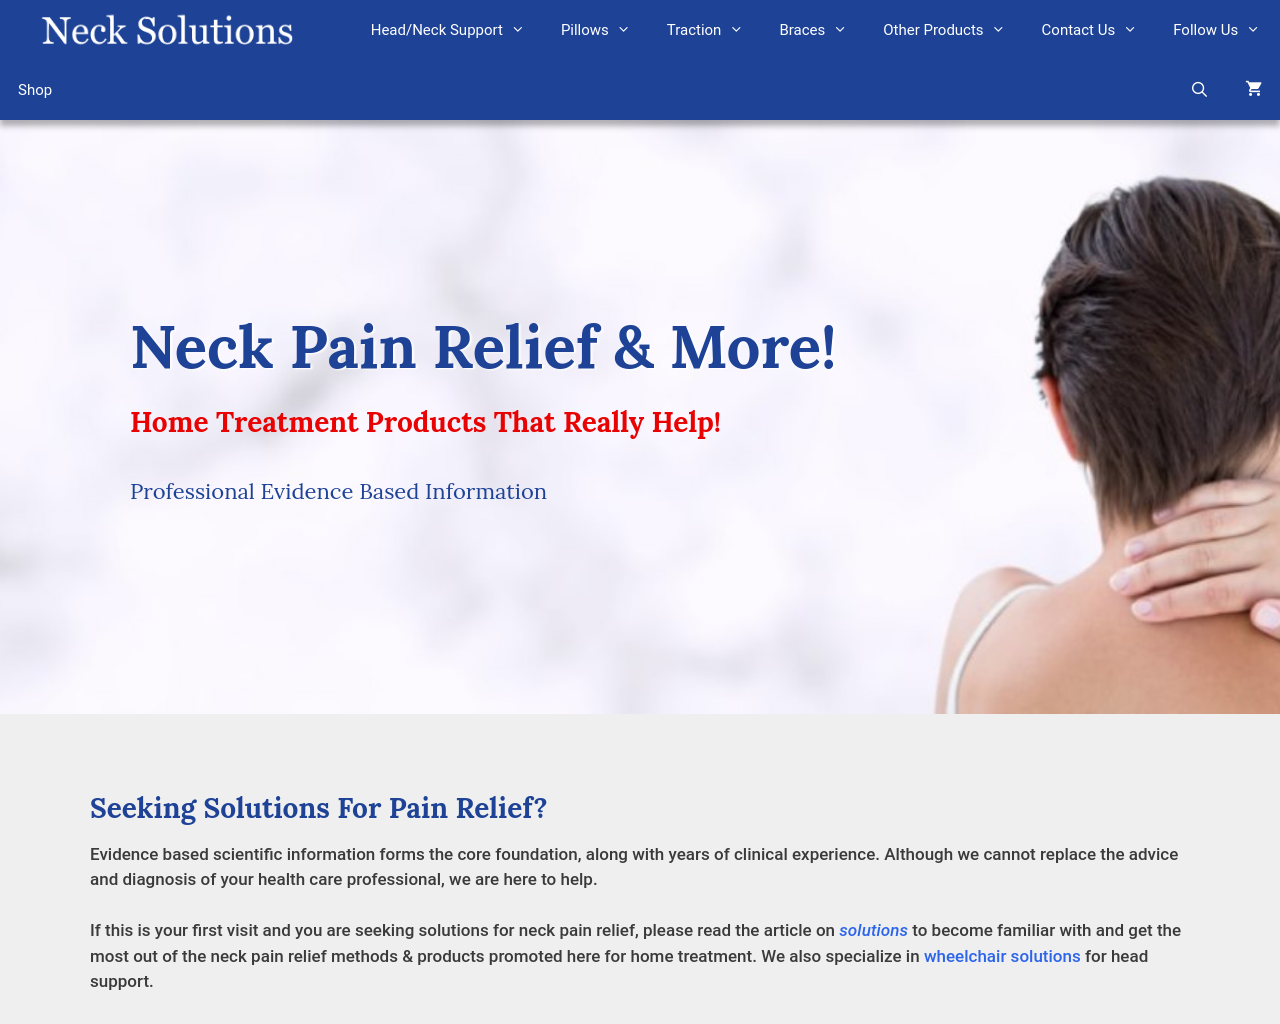 necksolutions.com